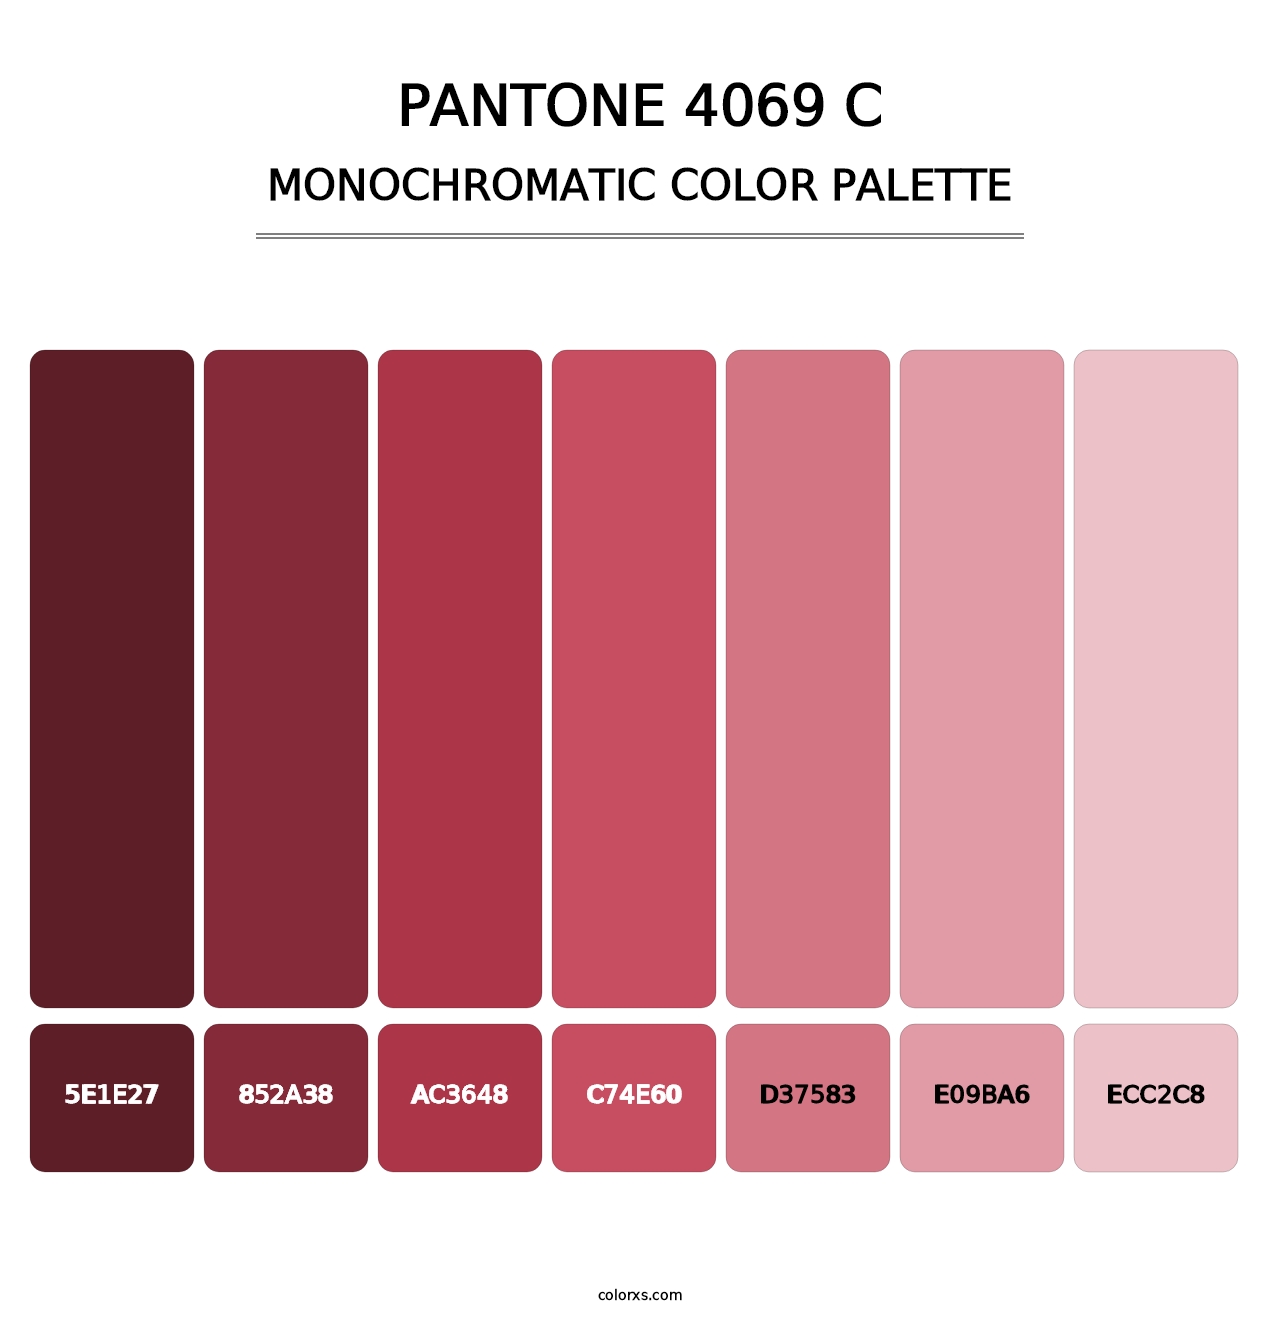 PANTONE 4069 C - Monochromatic Color Palette